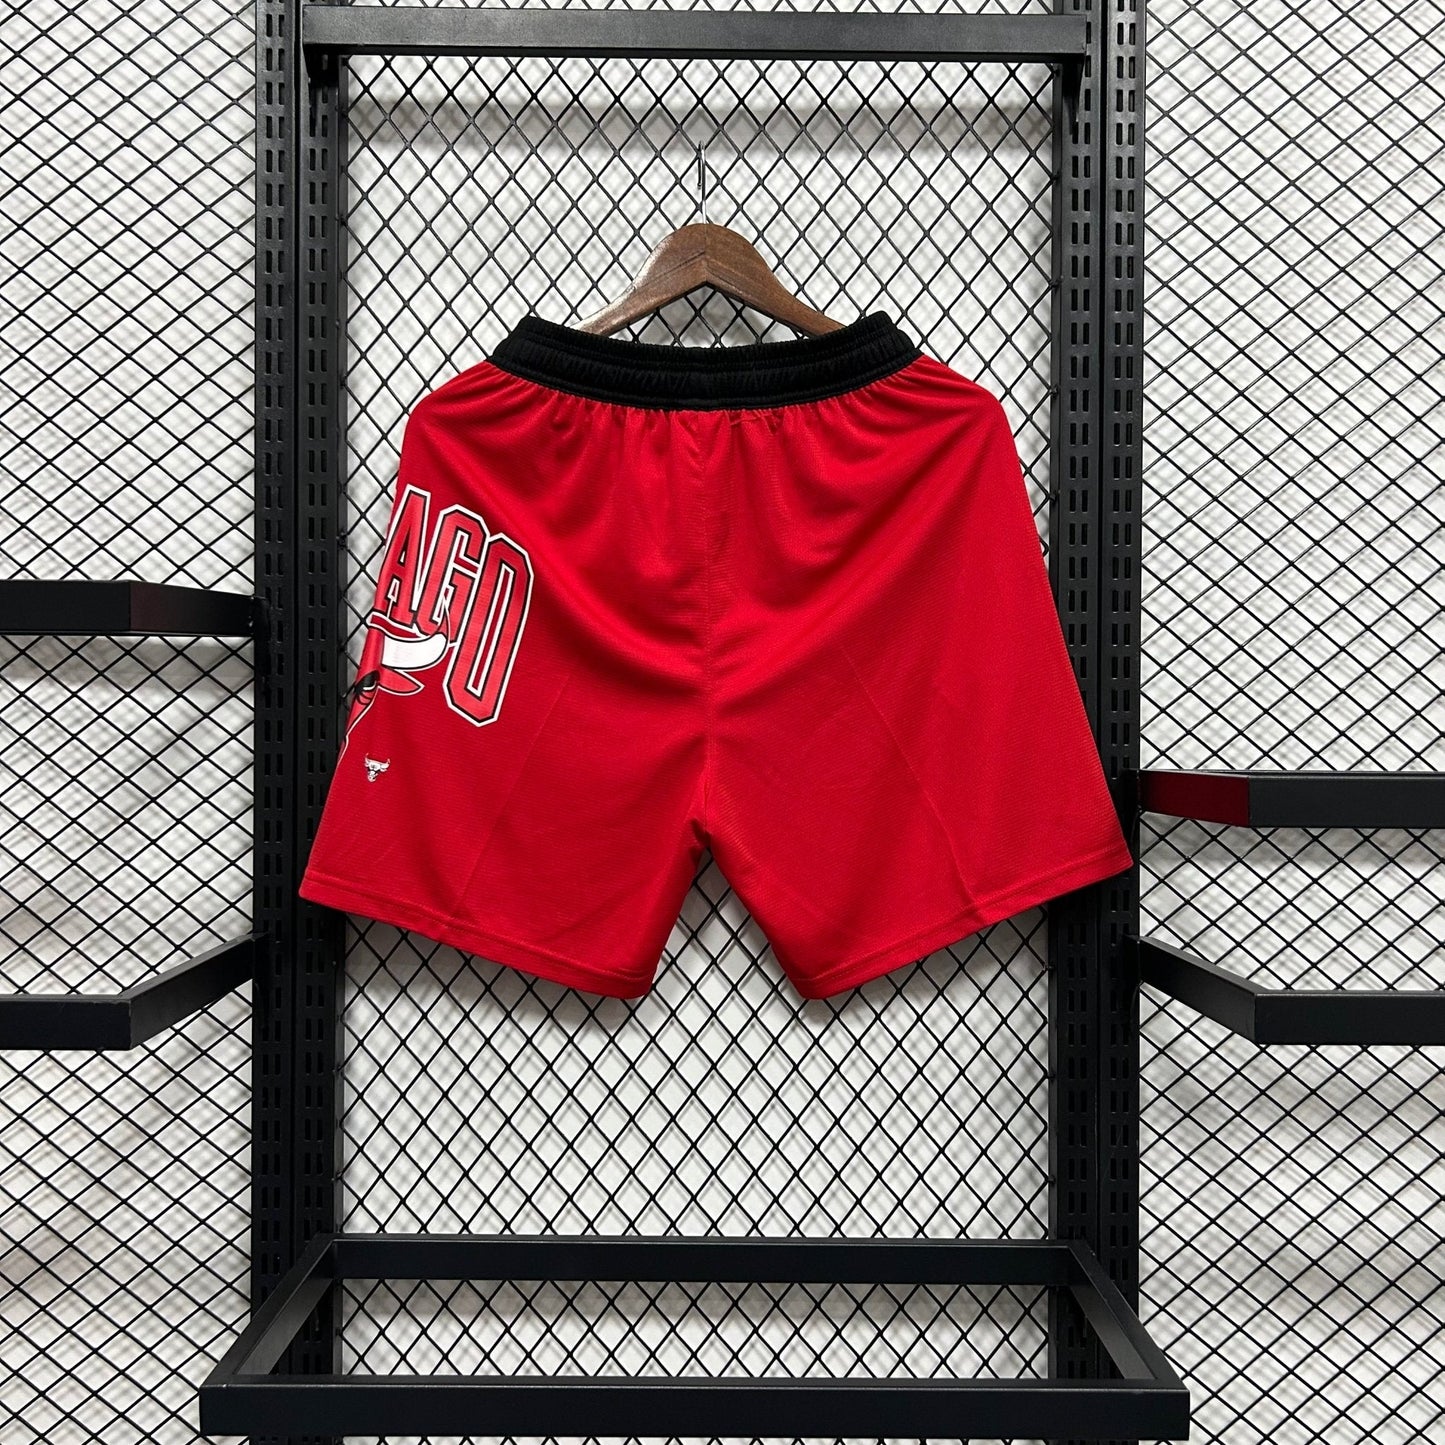 Shorts casual do Chicago Bulls vermelho